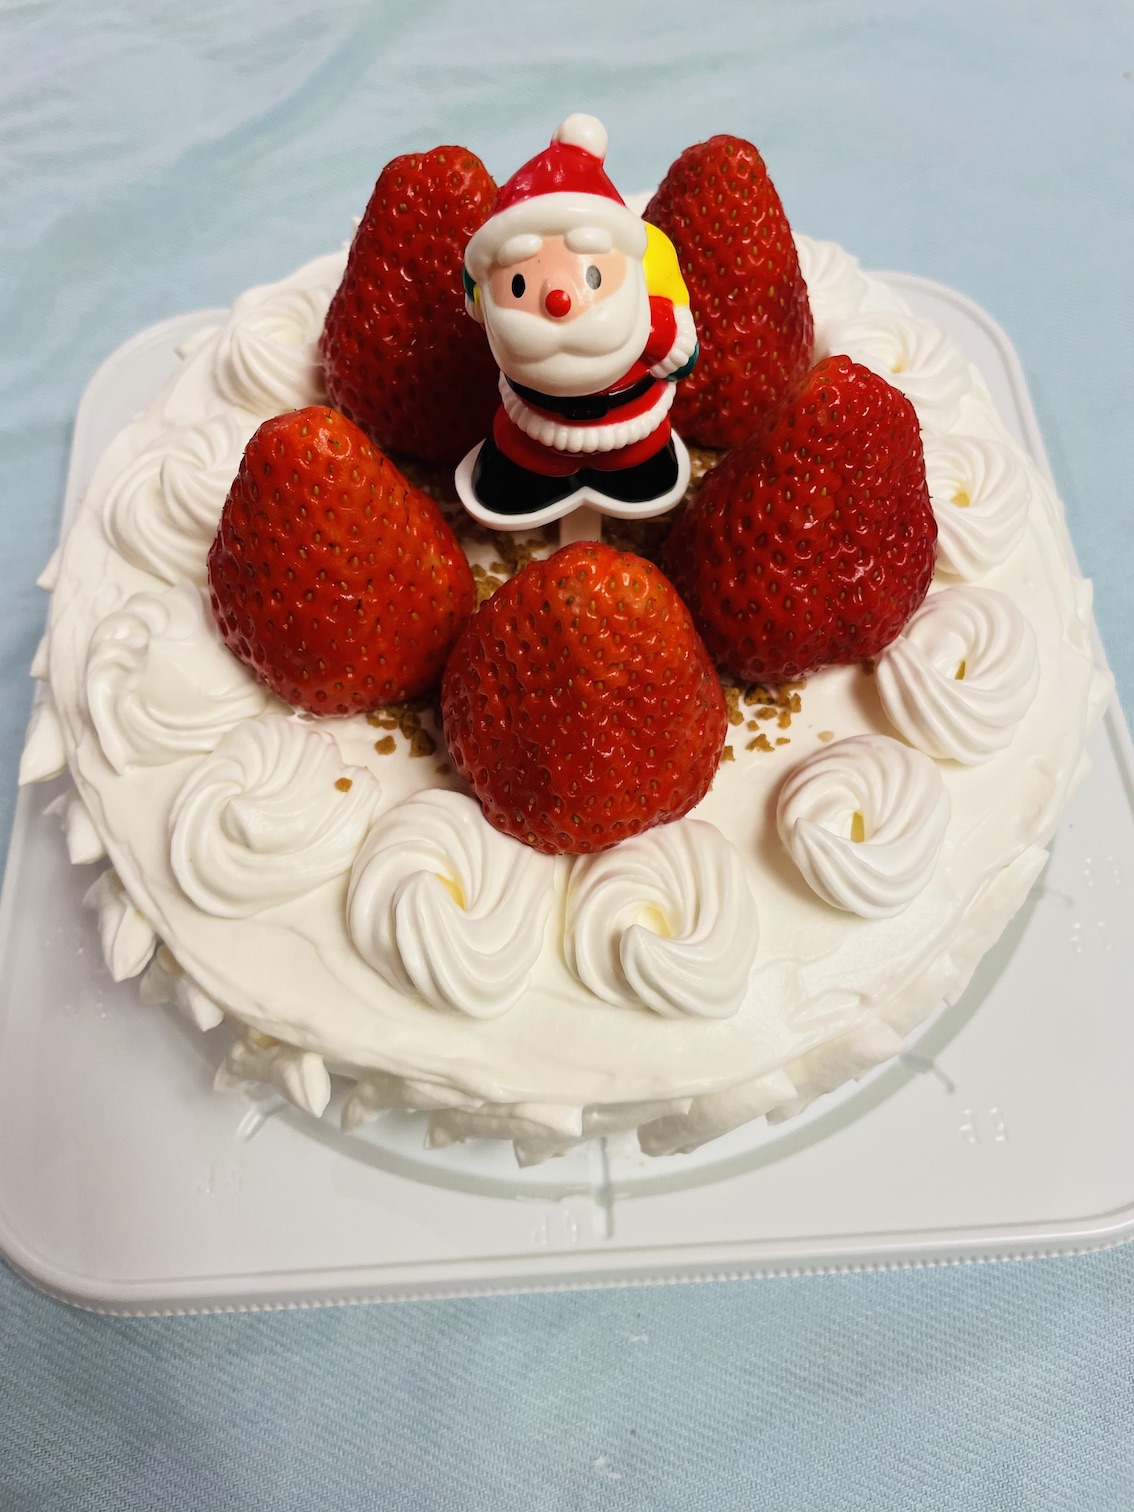 今年もクリスマスケーキ作り 院長ブログ 咲くらクリニック